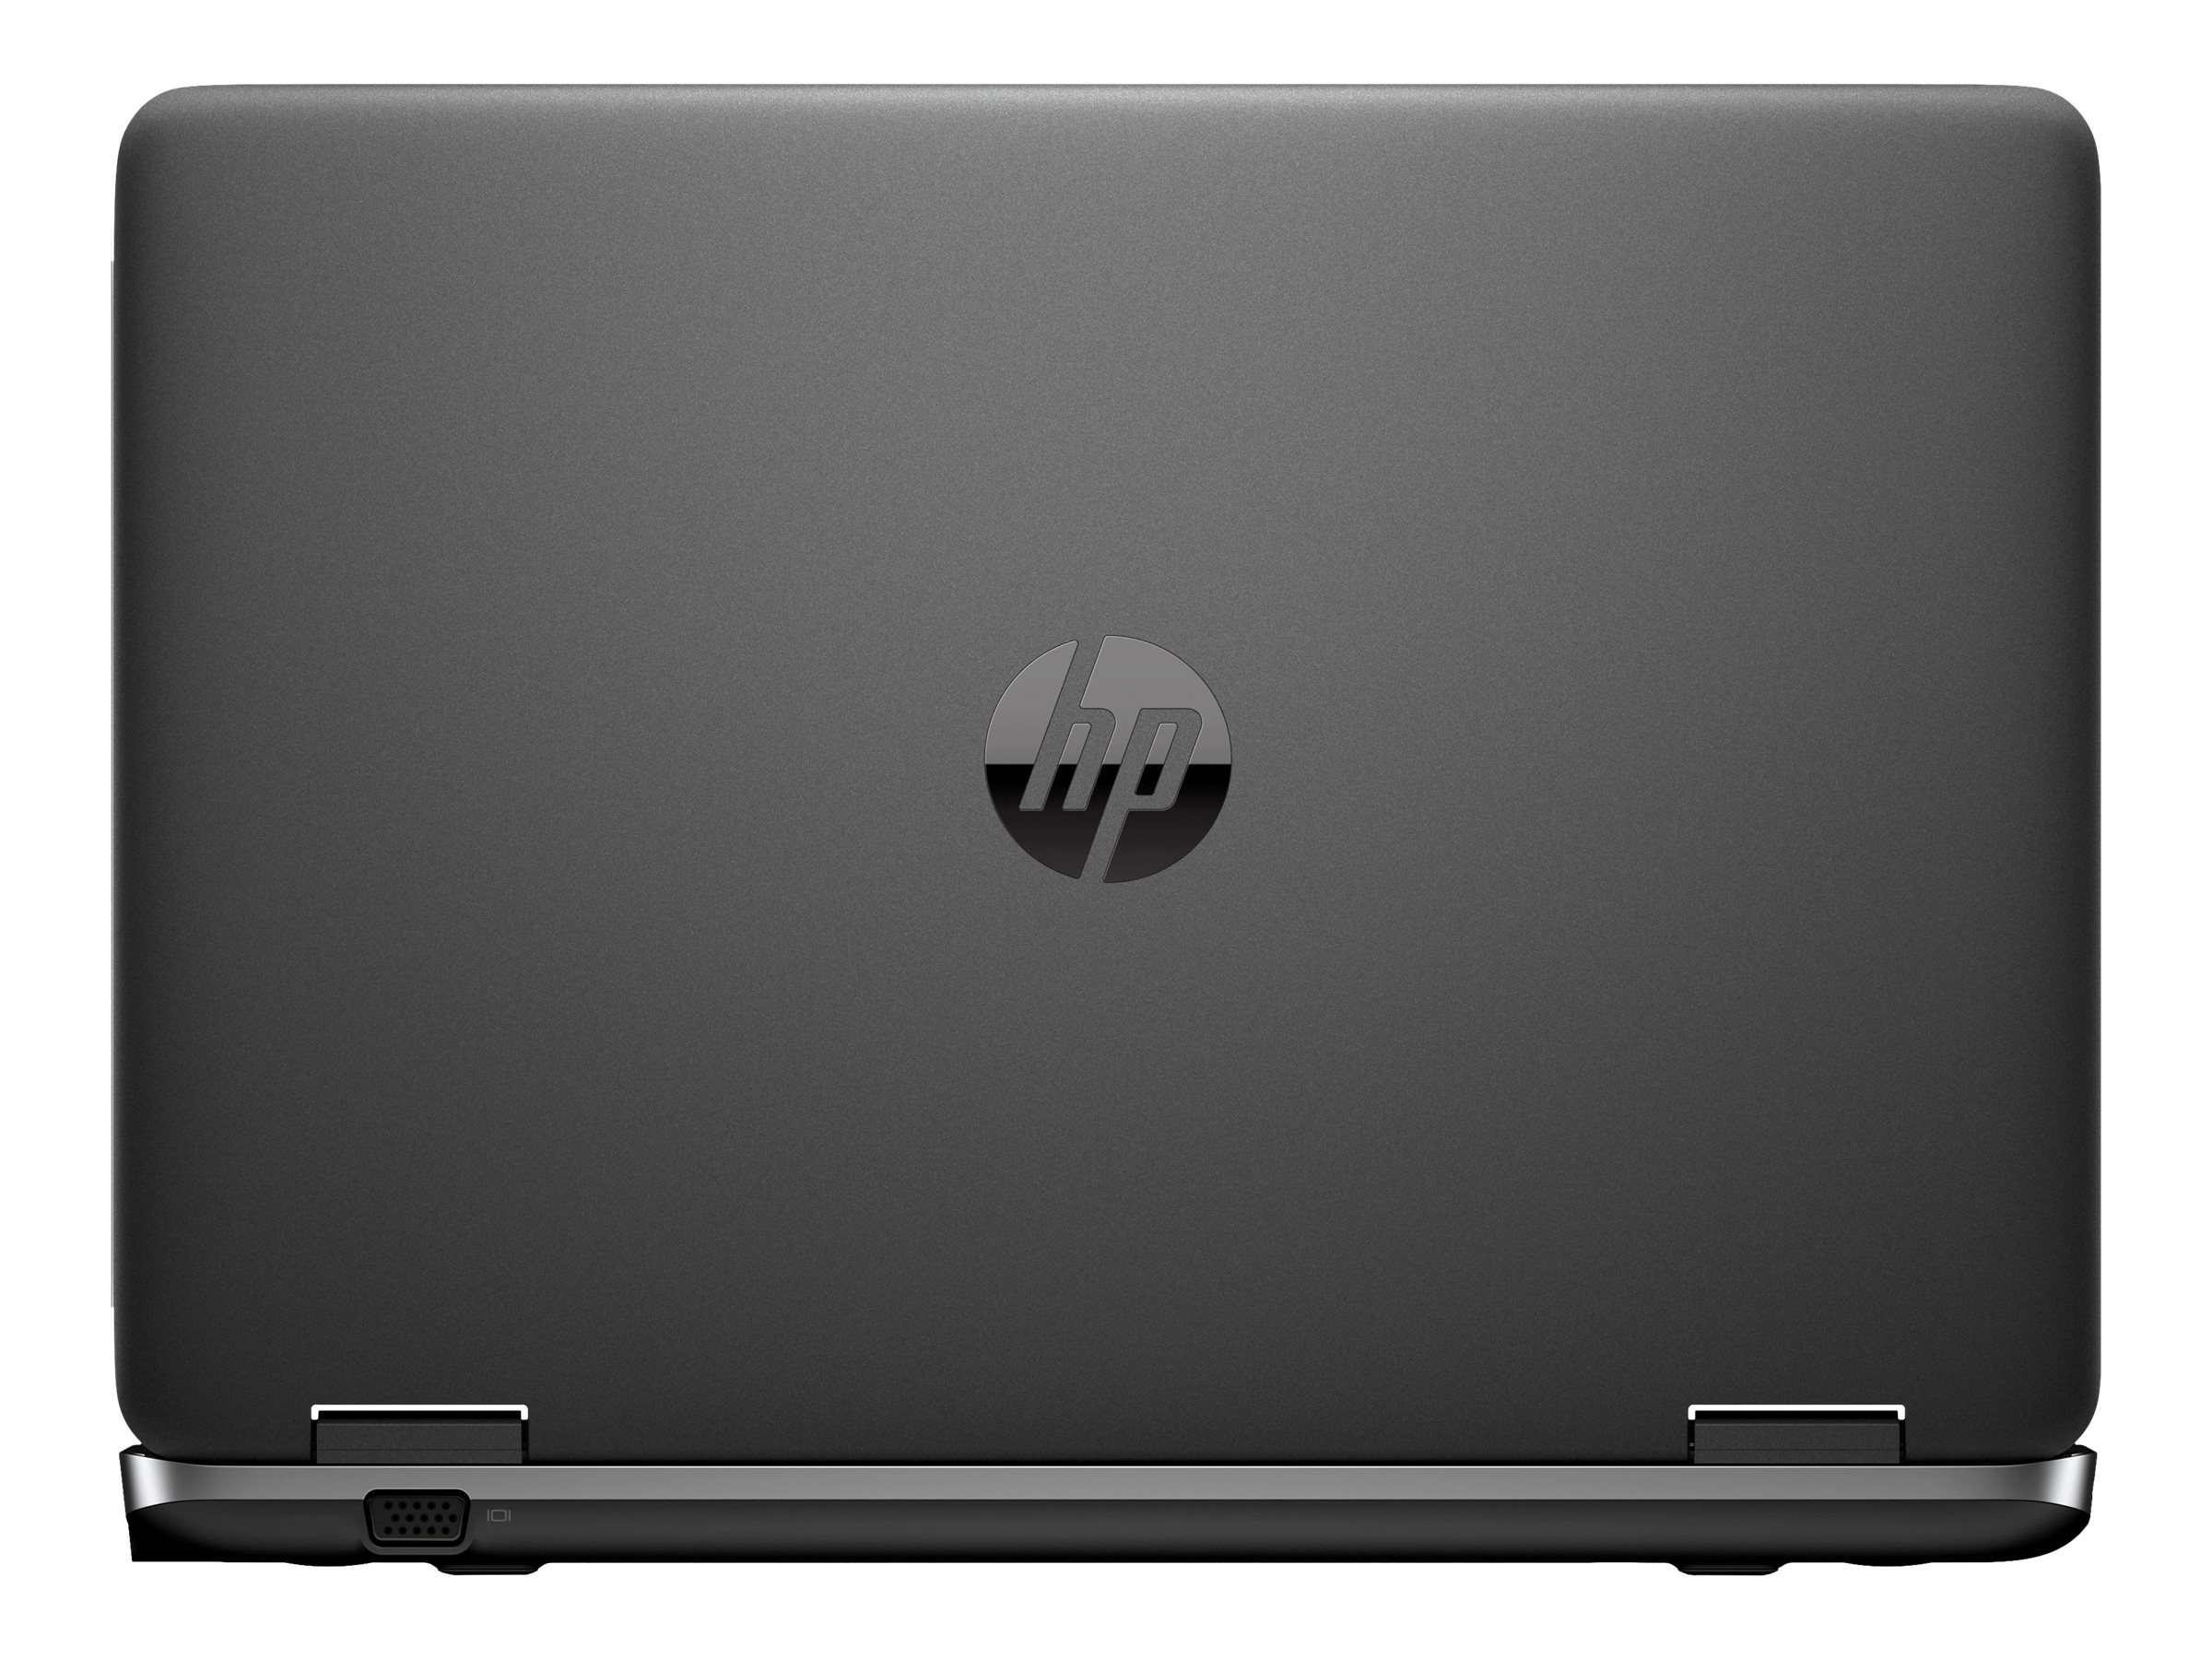 خرید   HP  لپ تاپ    ترب   قیمت    لپ تاپ    لپ تاپ    اچ پی	 قیمت    لپ تاپ     hp